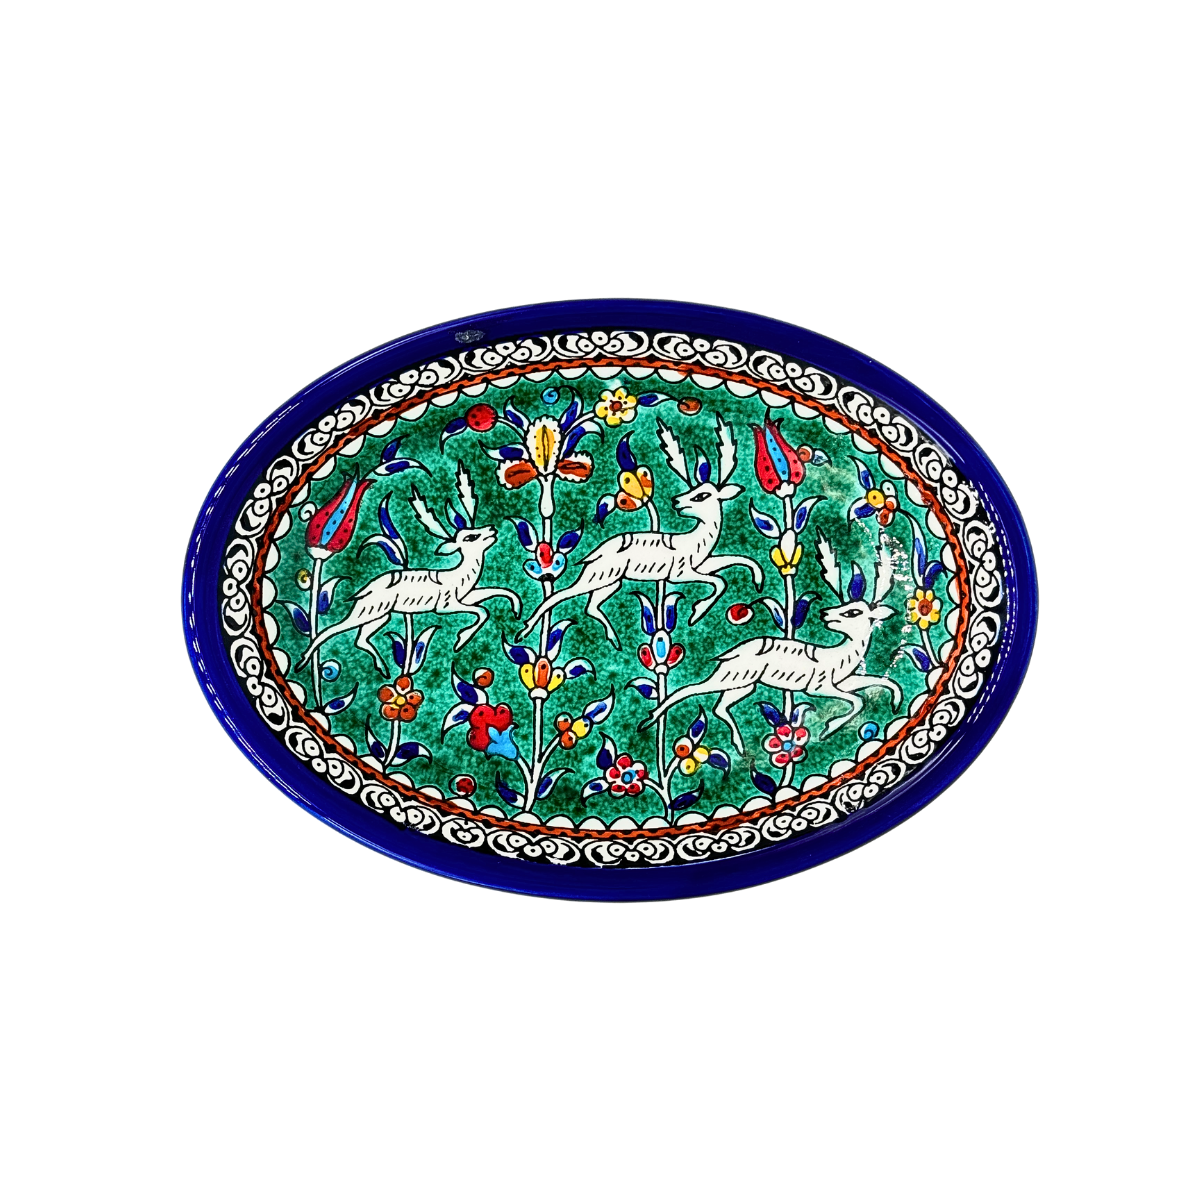 Ceramic Oval Dish (9") - Turquoise Gazelle